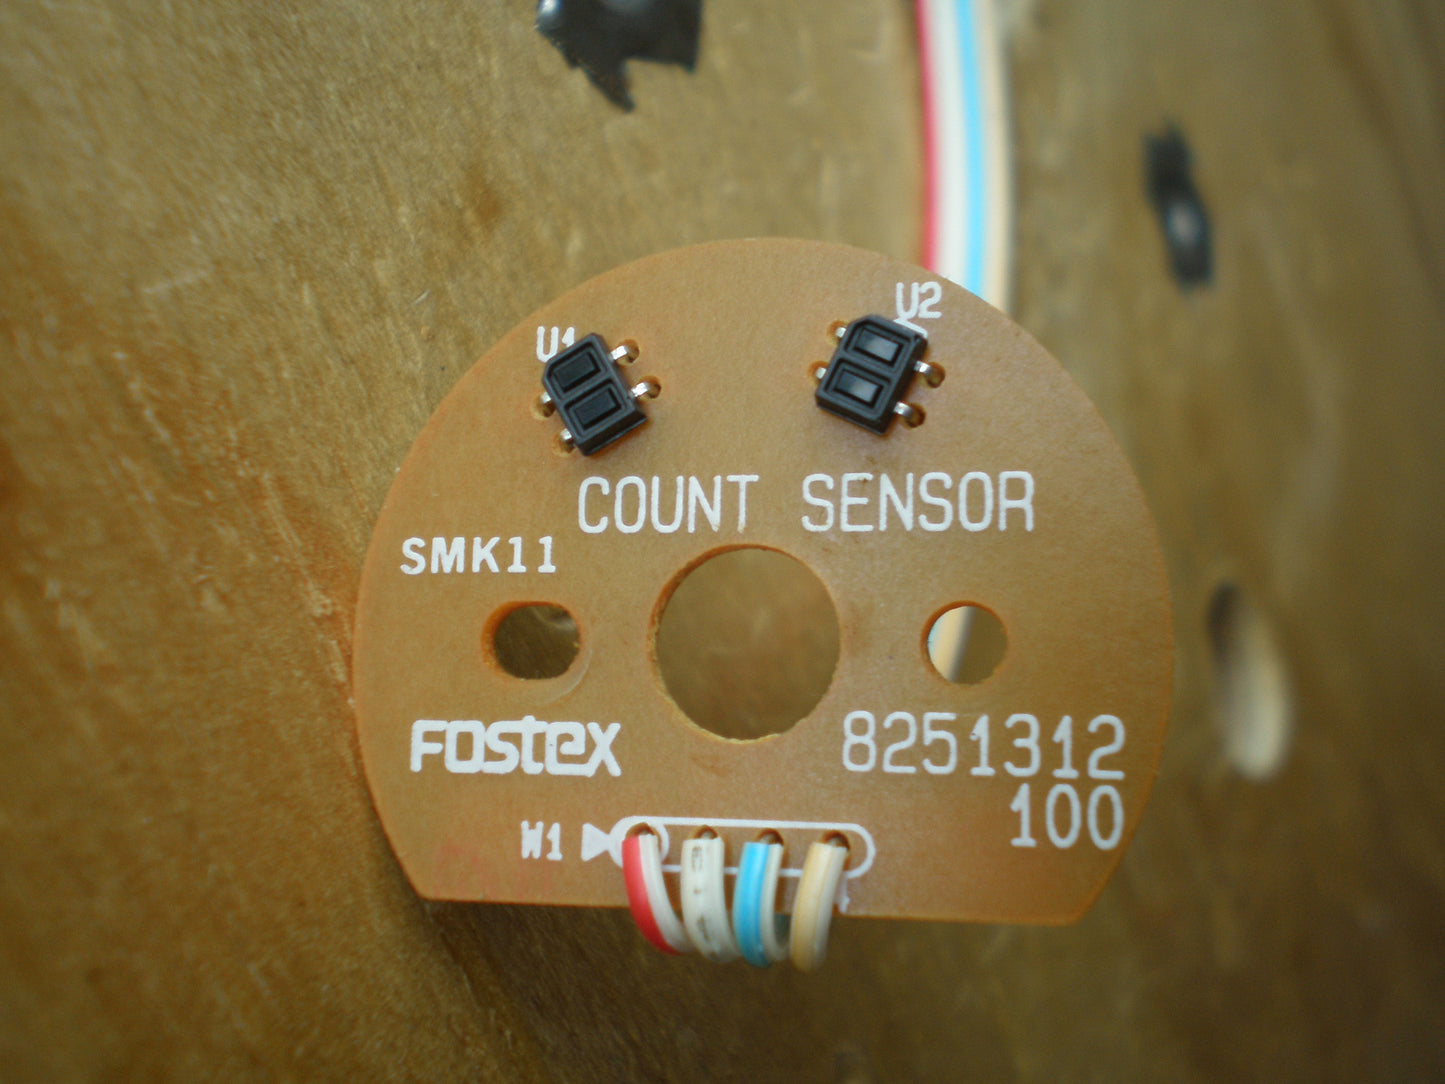 Fostex R8 count sensor 8251312-100